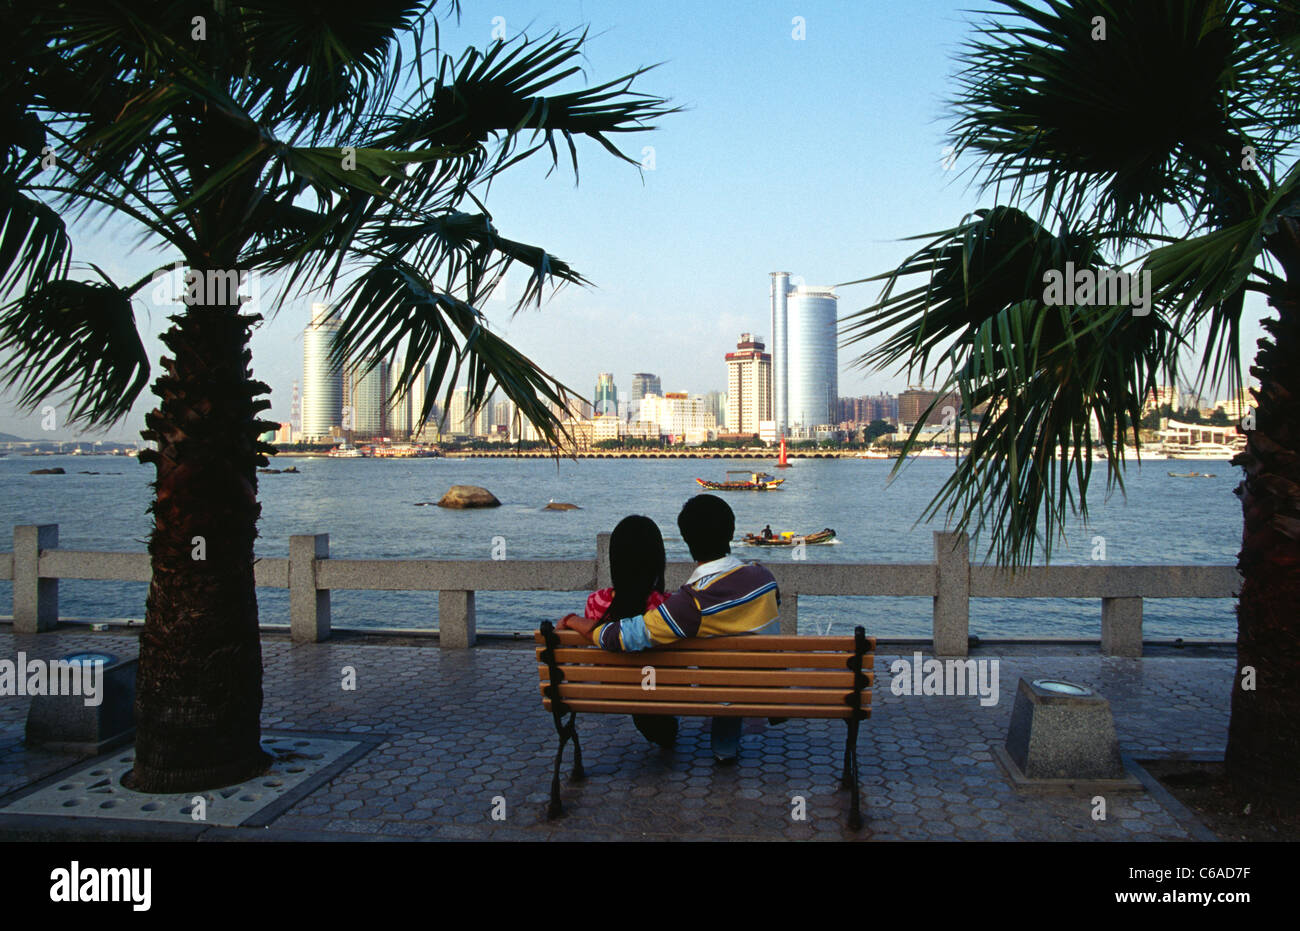 Un jeune couple assis sur un banc en regardant les toits de Xiamen Chine à partir de l'île touristique de la Chine 141 Banque D'Images